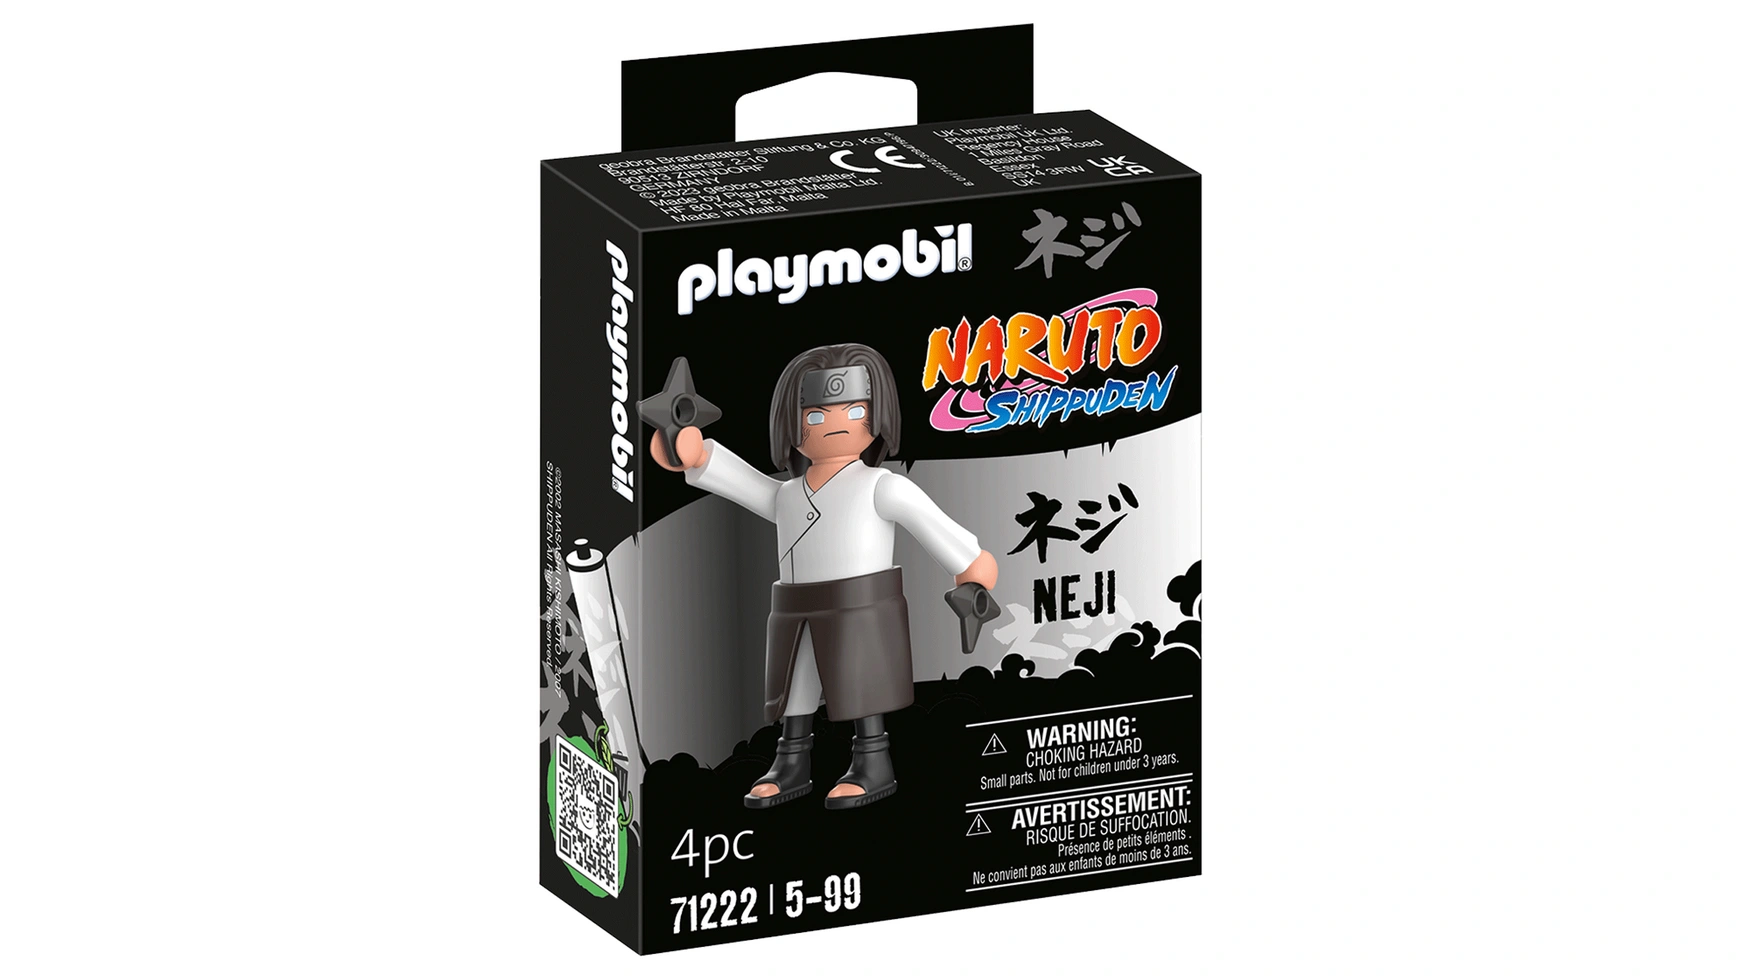 цена Наруто неджи Playmobil